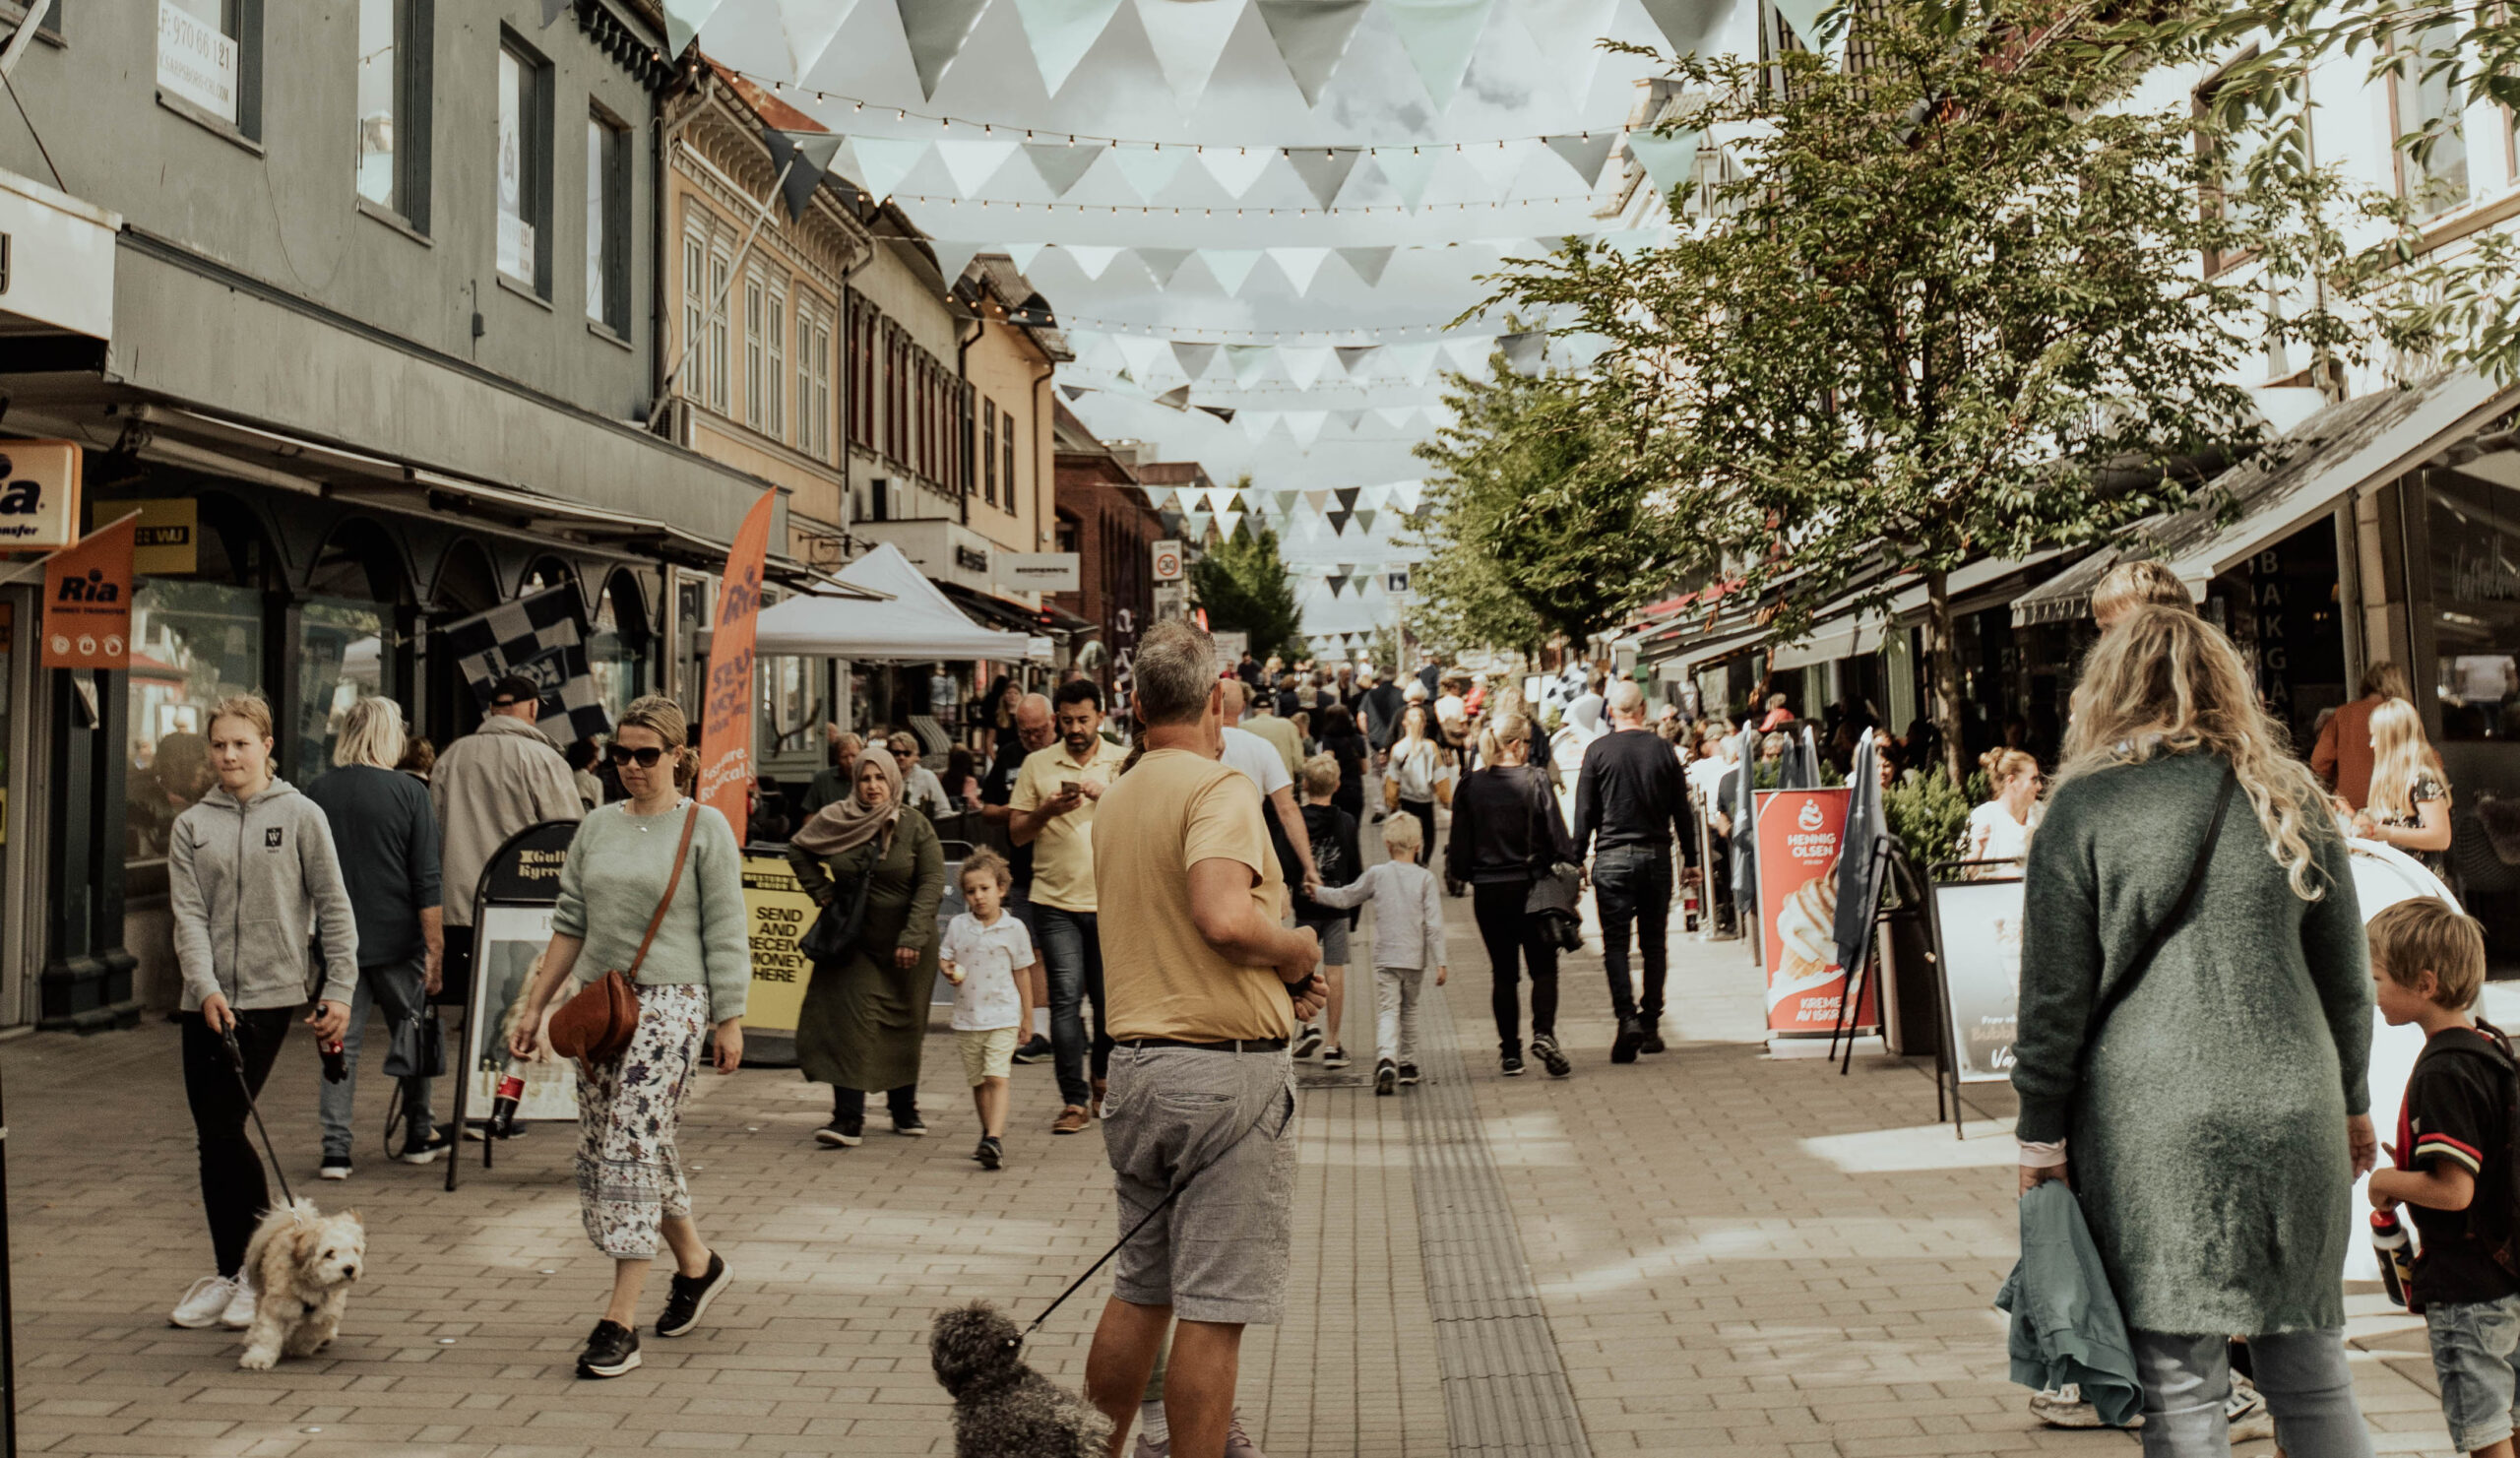 Mennesker, boder og pynt i gågata i Sarpsborg. Foto.